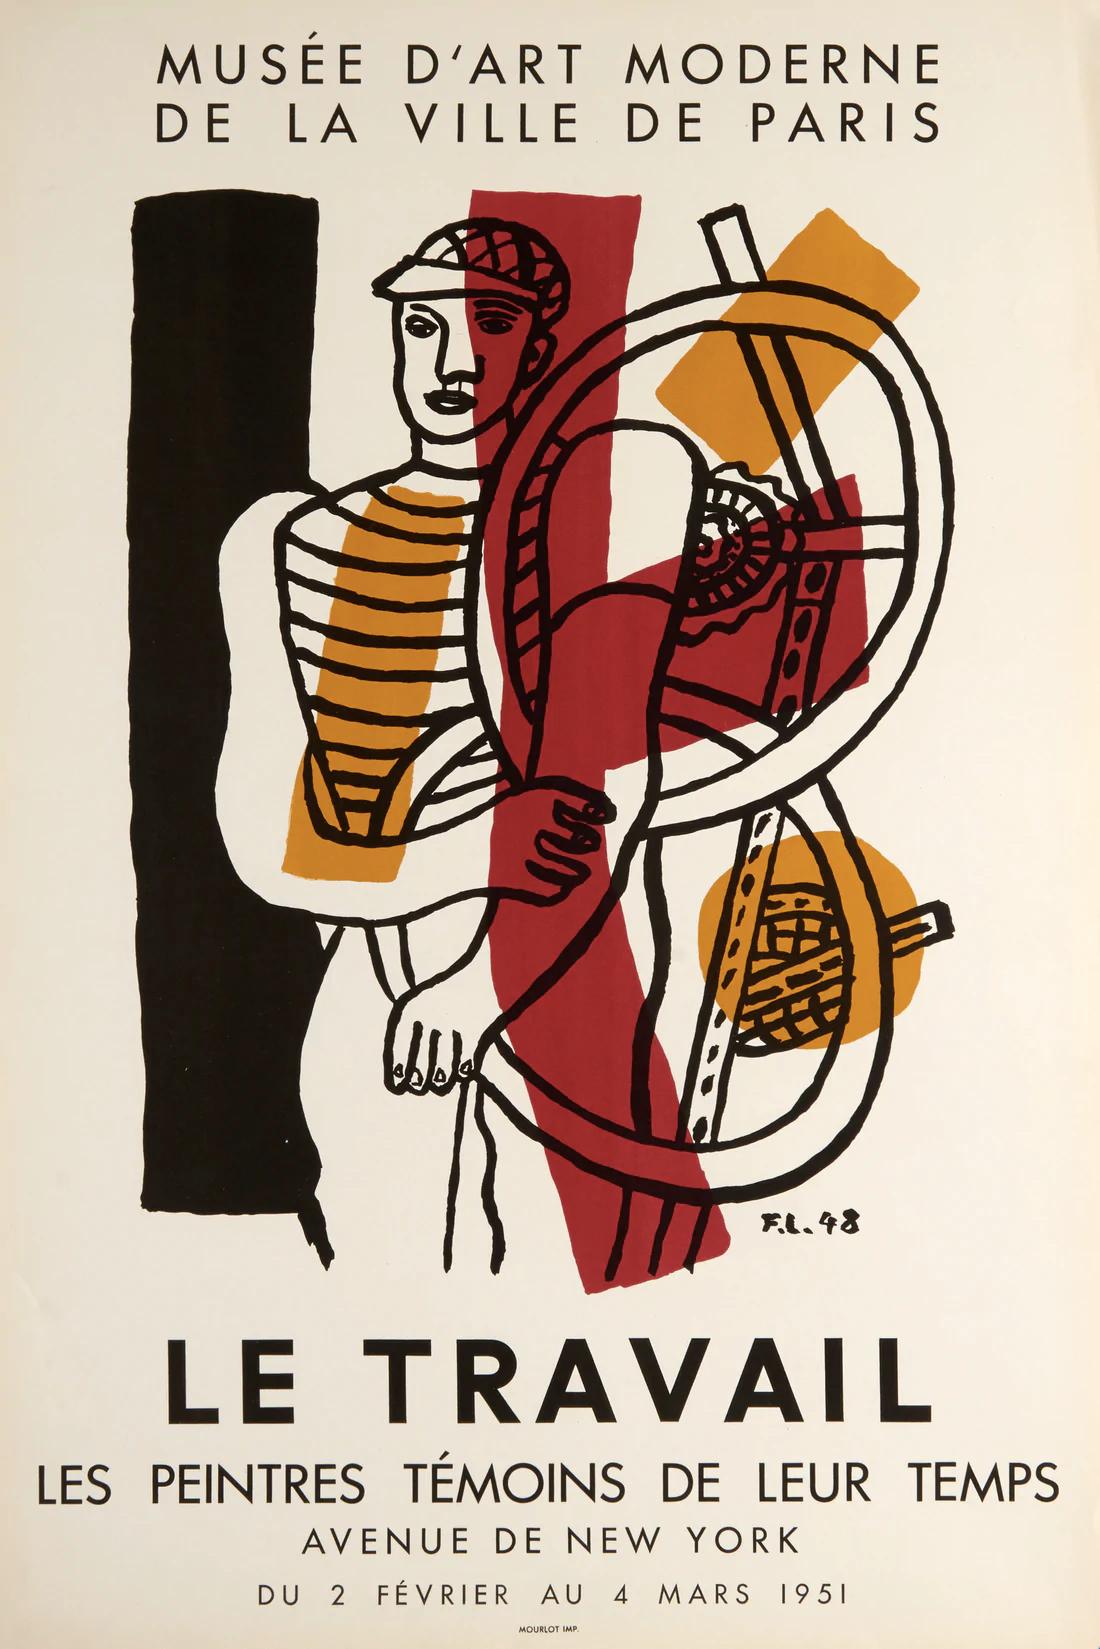 Artiste : Fernand Léger

Médium : Affiche lithographique, 1951

Dimensions : 30.25 x 20.5 in, 76.8 x 52.1 cm

Papier pour posters classiques - Condition parfaite A+

Affiche lithographique pour le "Salon des Peintres témoins de leurs temps", qui